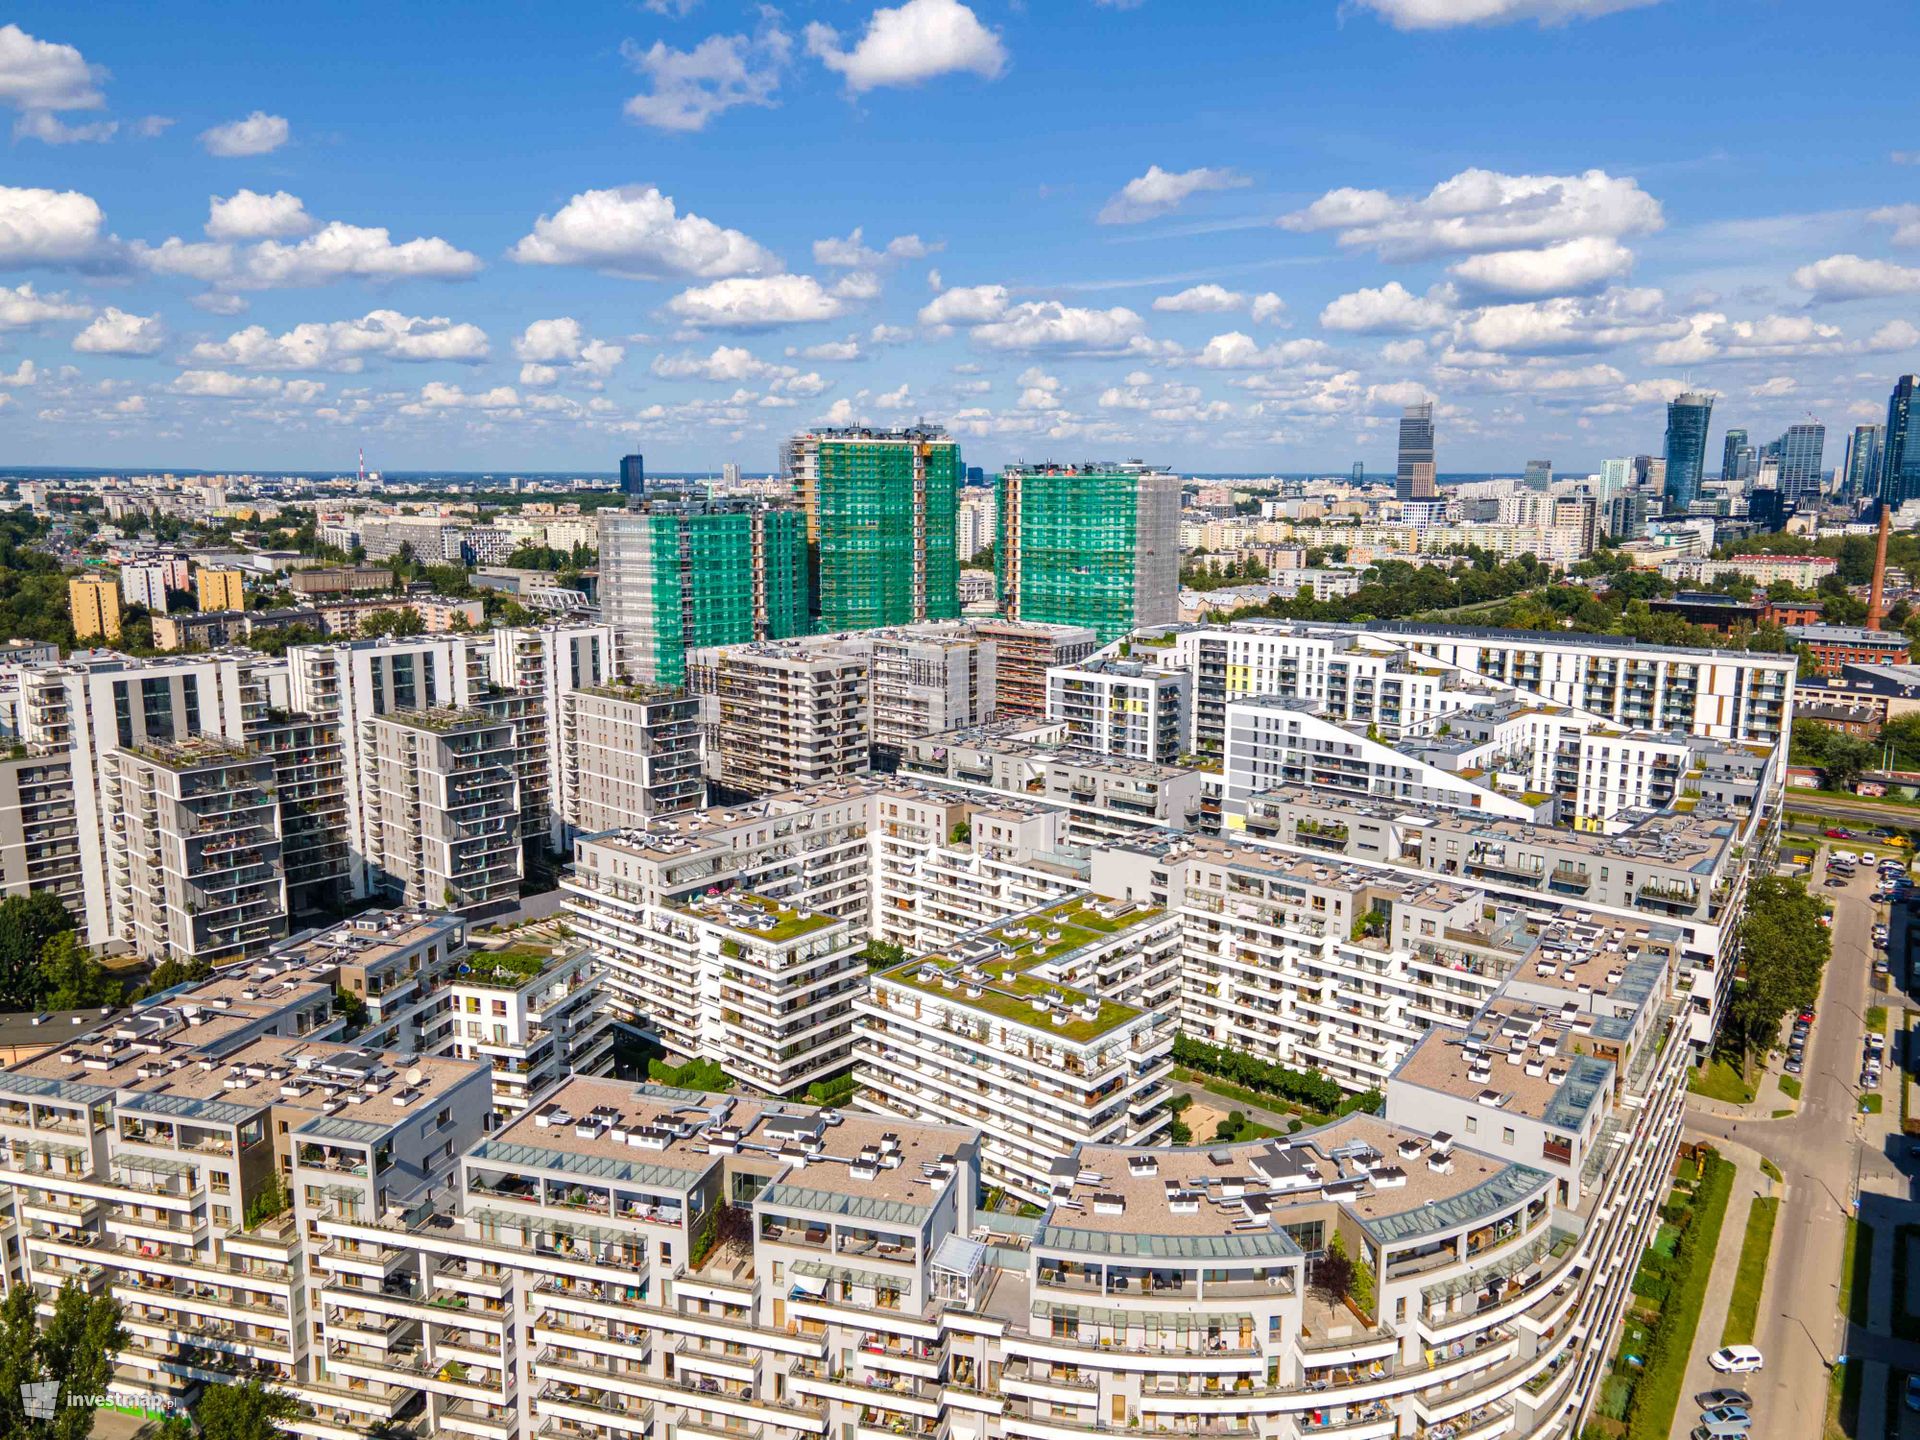 Sprzedaż mieszkań w Warszawie spadła, ale ceny trzymają poziom